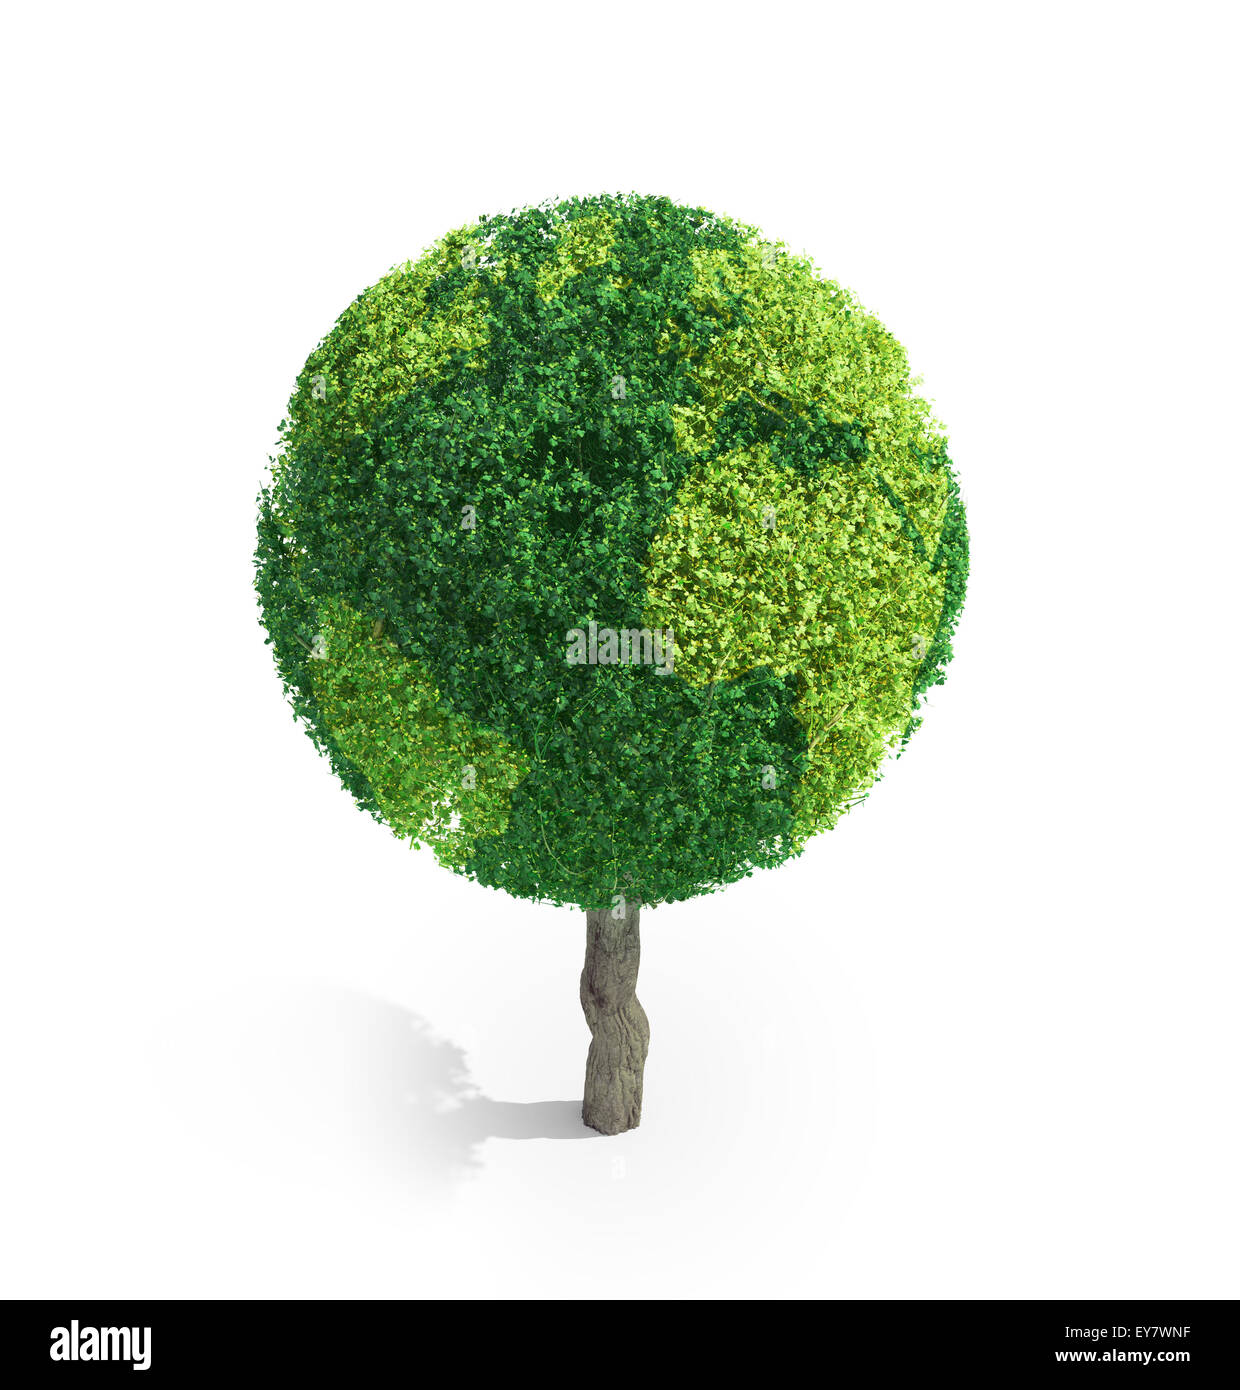 World globe constitué de feuilles vertes - ecology concept Banque D'Images